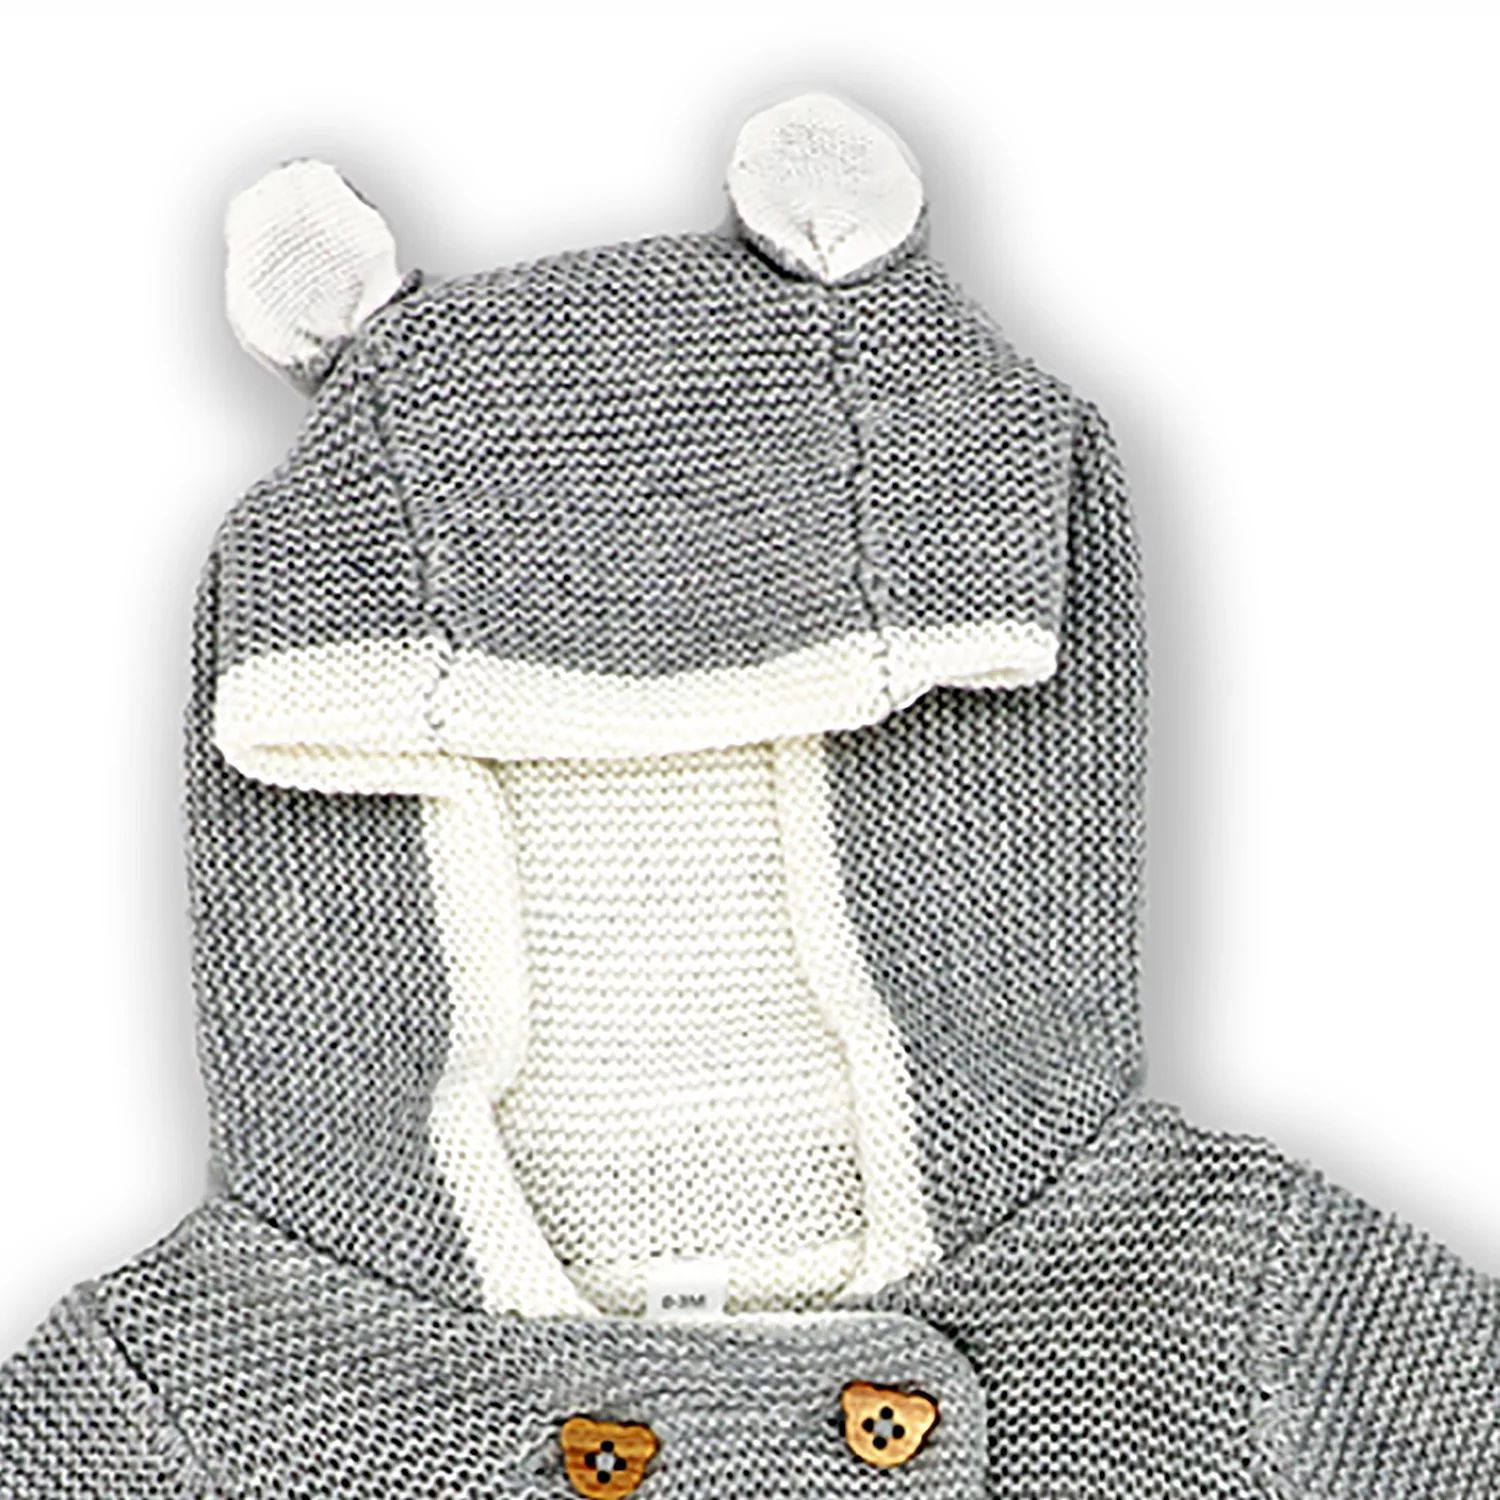 bye bye paris mother baby care bag hi̇gh quality warranty period month 12 Серый комплект из 2 предметов вязаного свитера с капюшоном для маленьких мальчиков и девочек Rock A Bye Baby Boutique